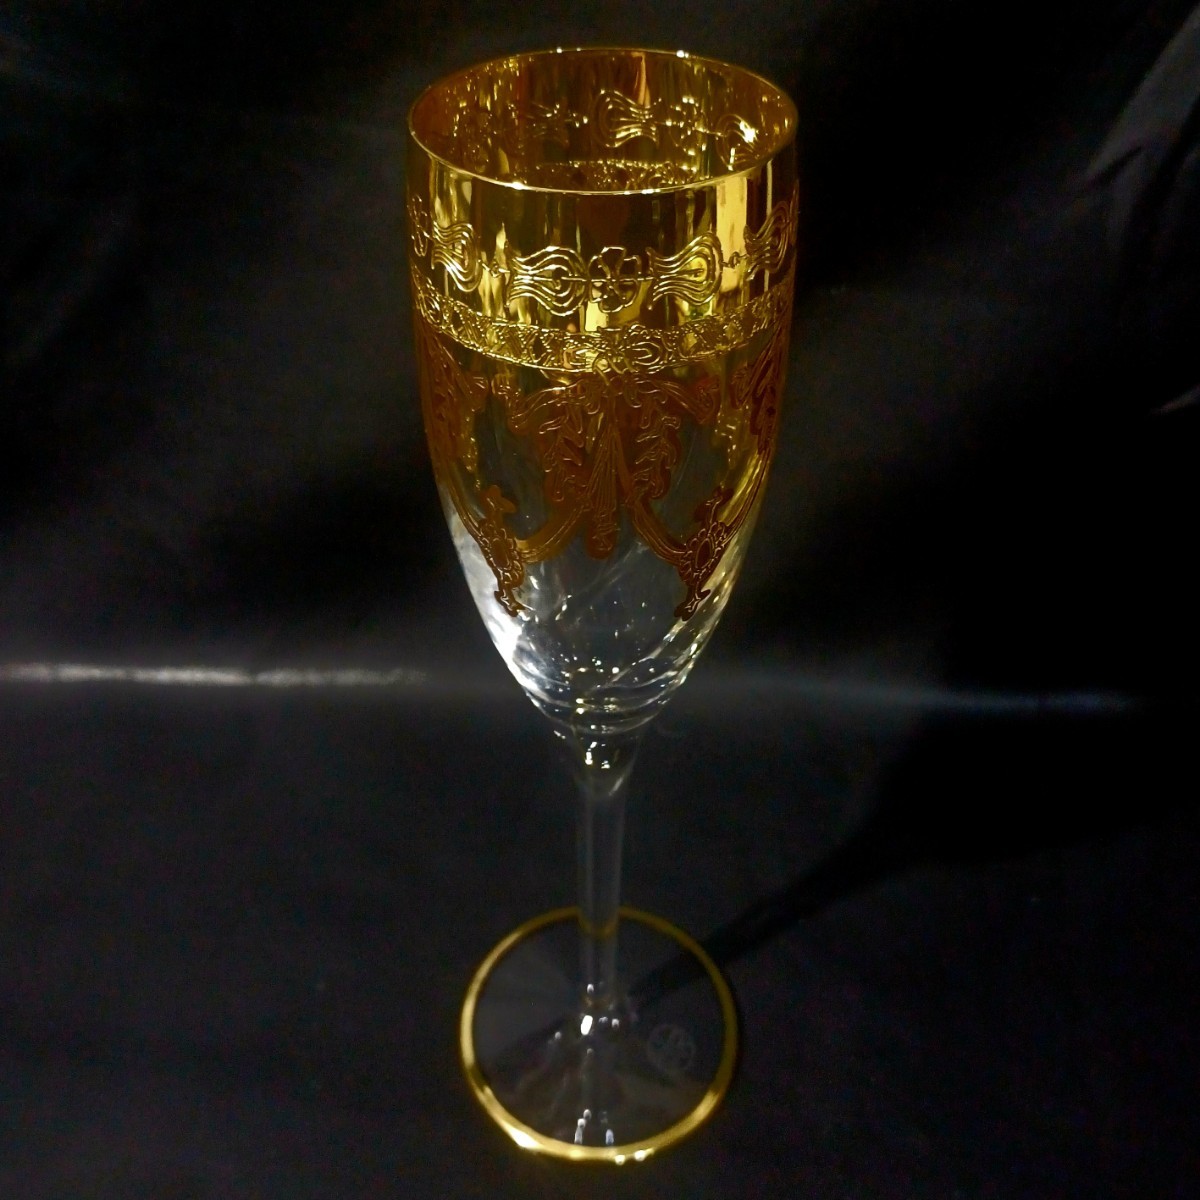 【MURANO】LAGUNA★ムラノ金彩 シャンパン フルート グラス ★ヴェネチアン グラス ムラーノ 島 ベネチアン ガラス ワイン サワー グラスの画像2